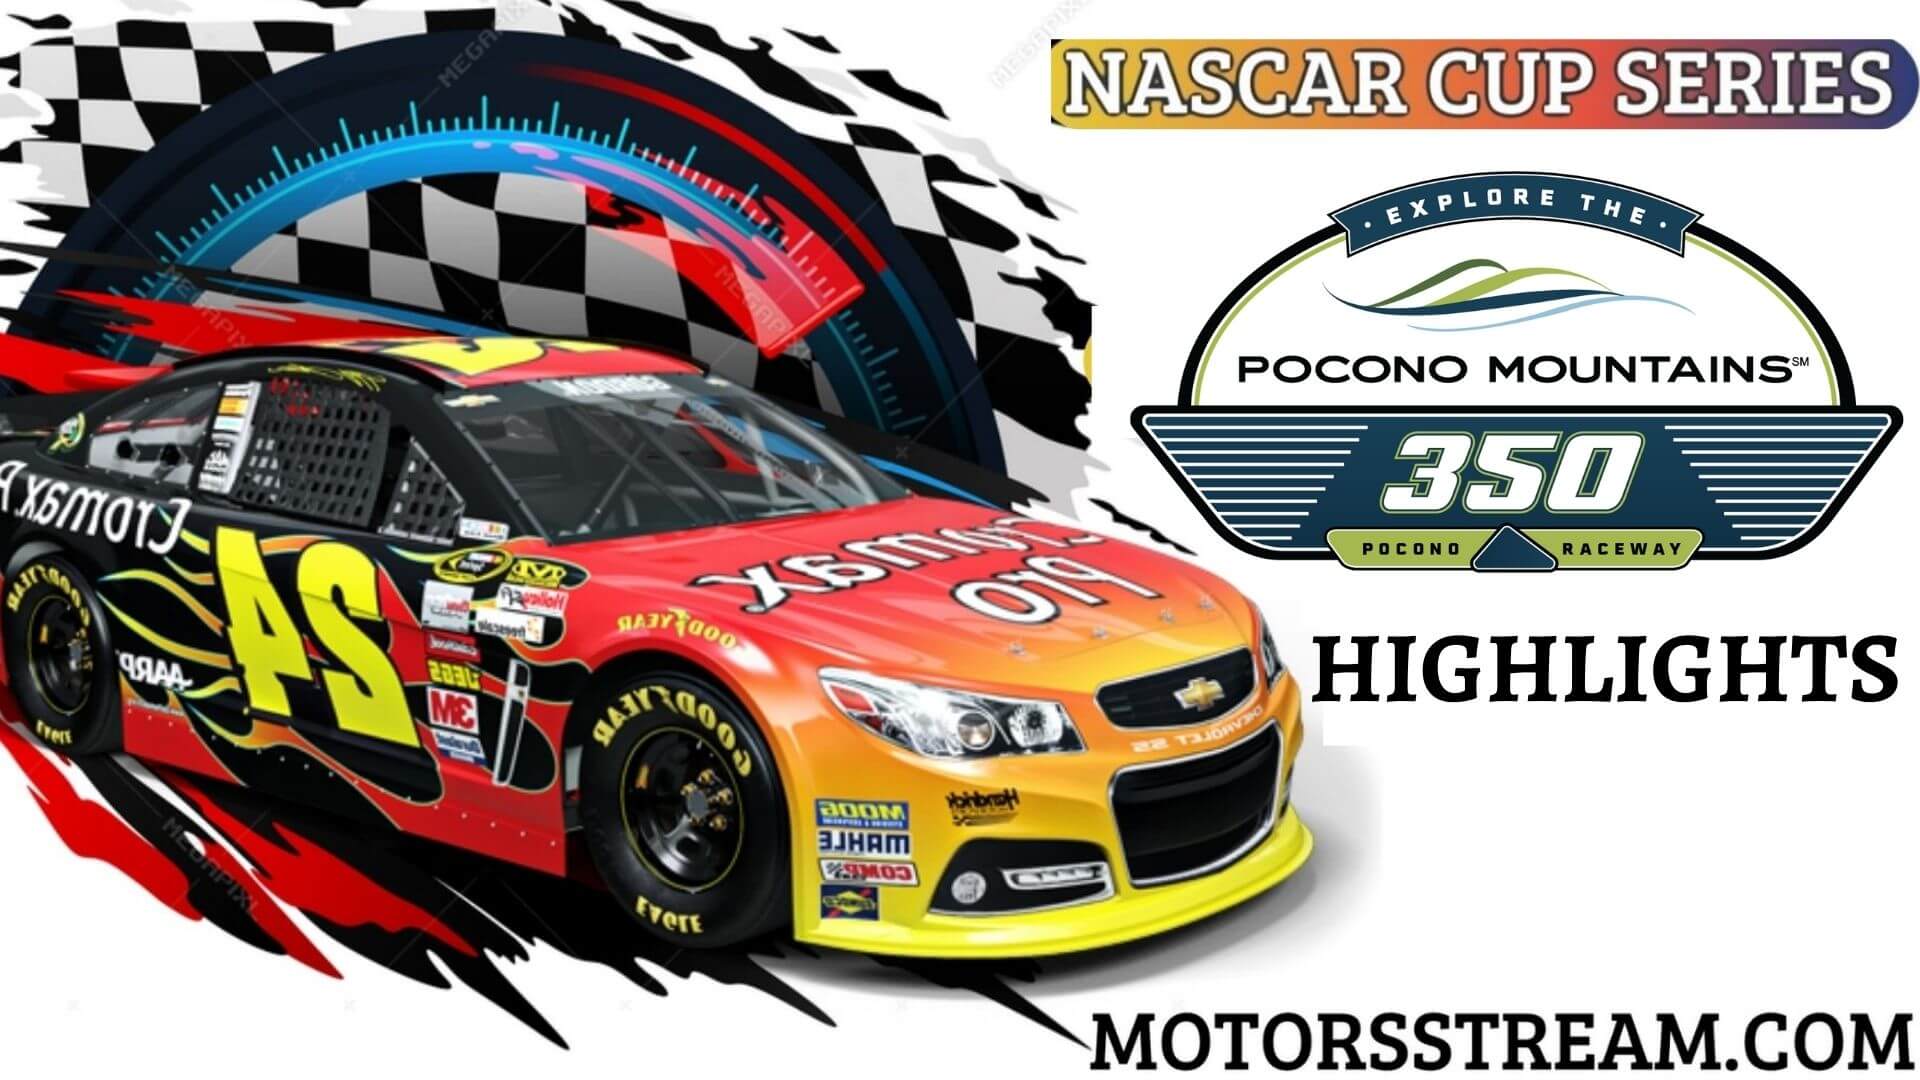 NASCAR Pocono Mountains 350 Highlights 2021 Cup Series